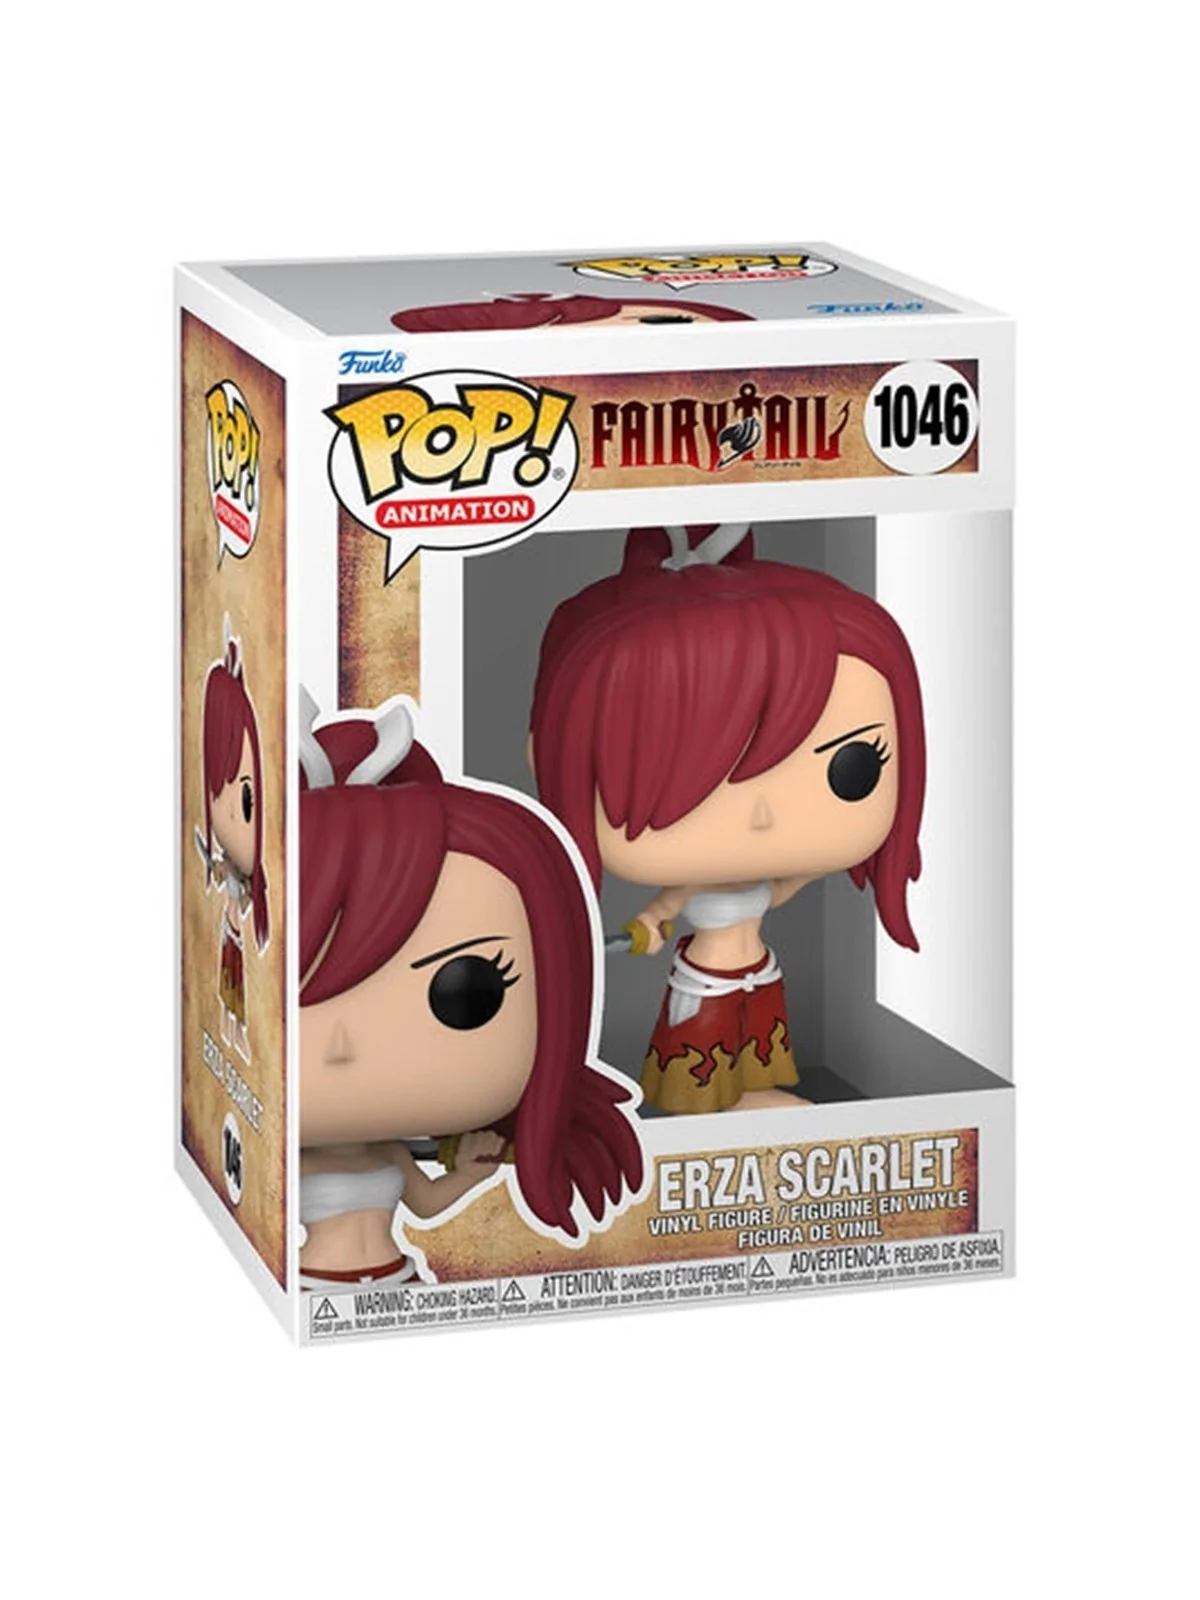 Comprar Funko POP! Fairy Tail Erza Scarlet (1046) barato al mejor prec